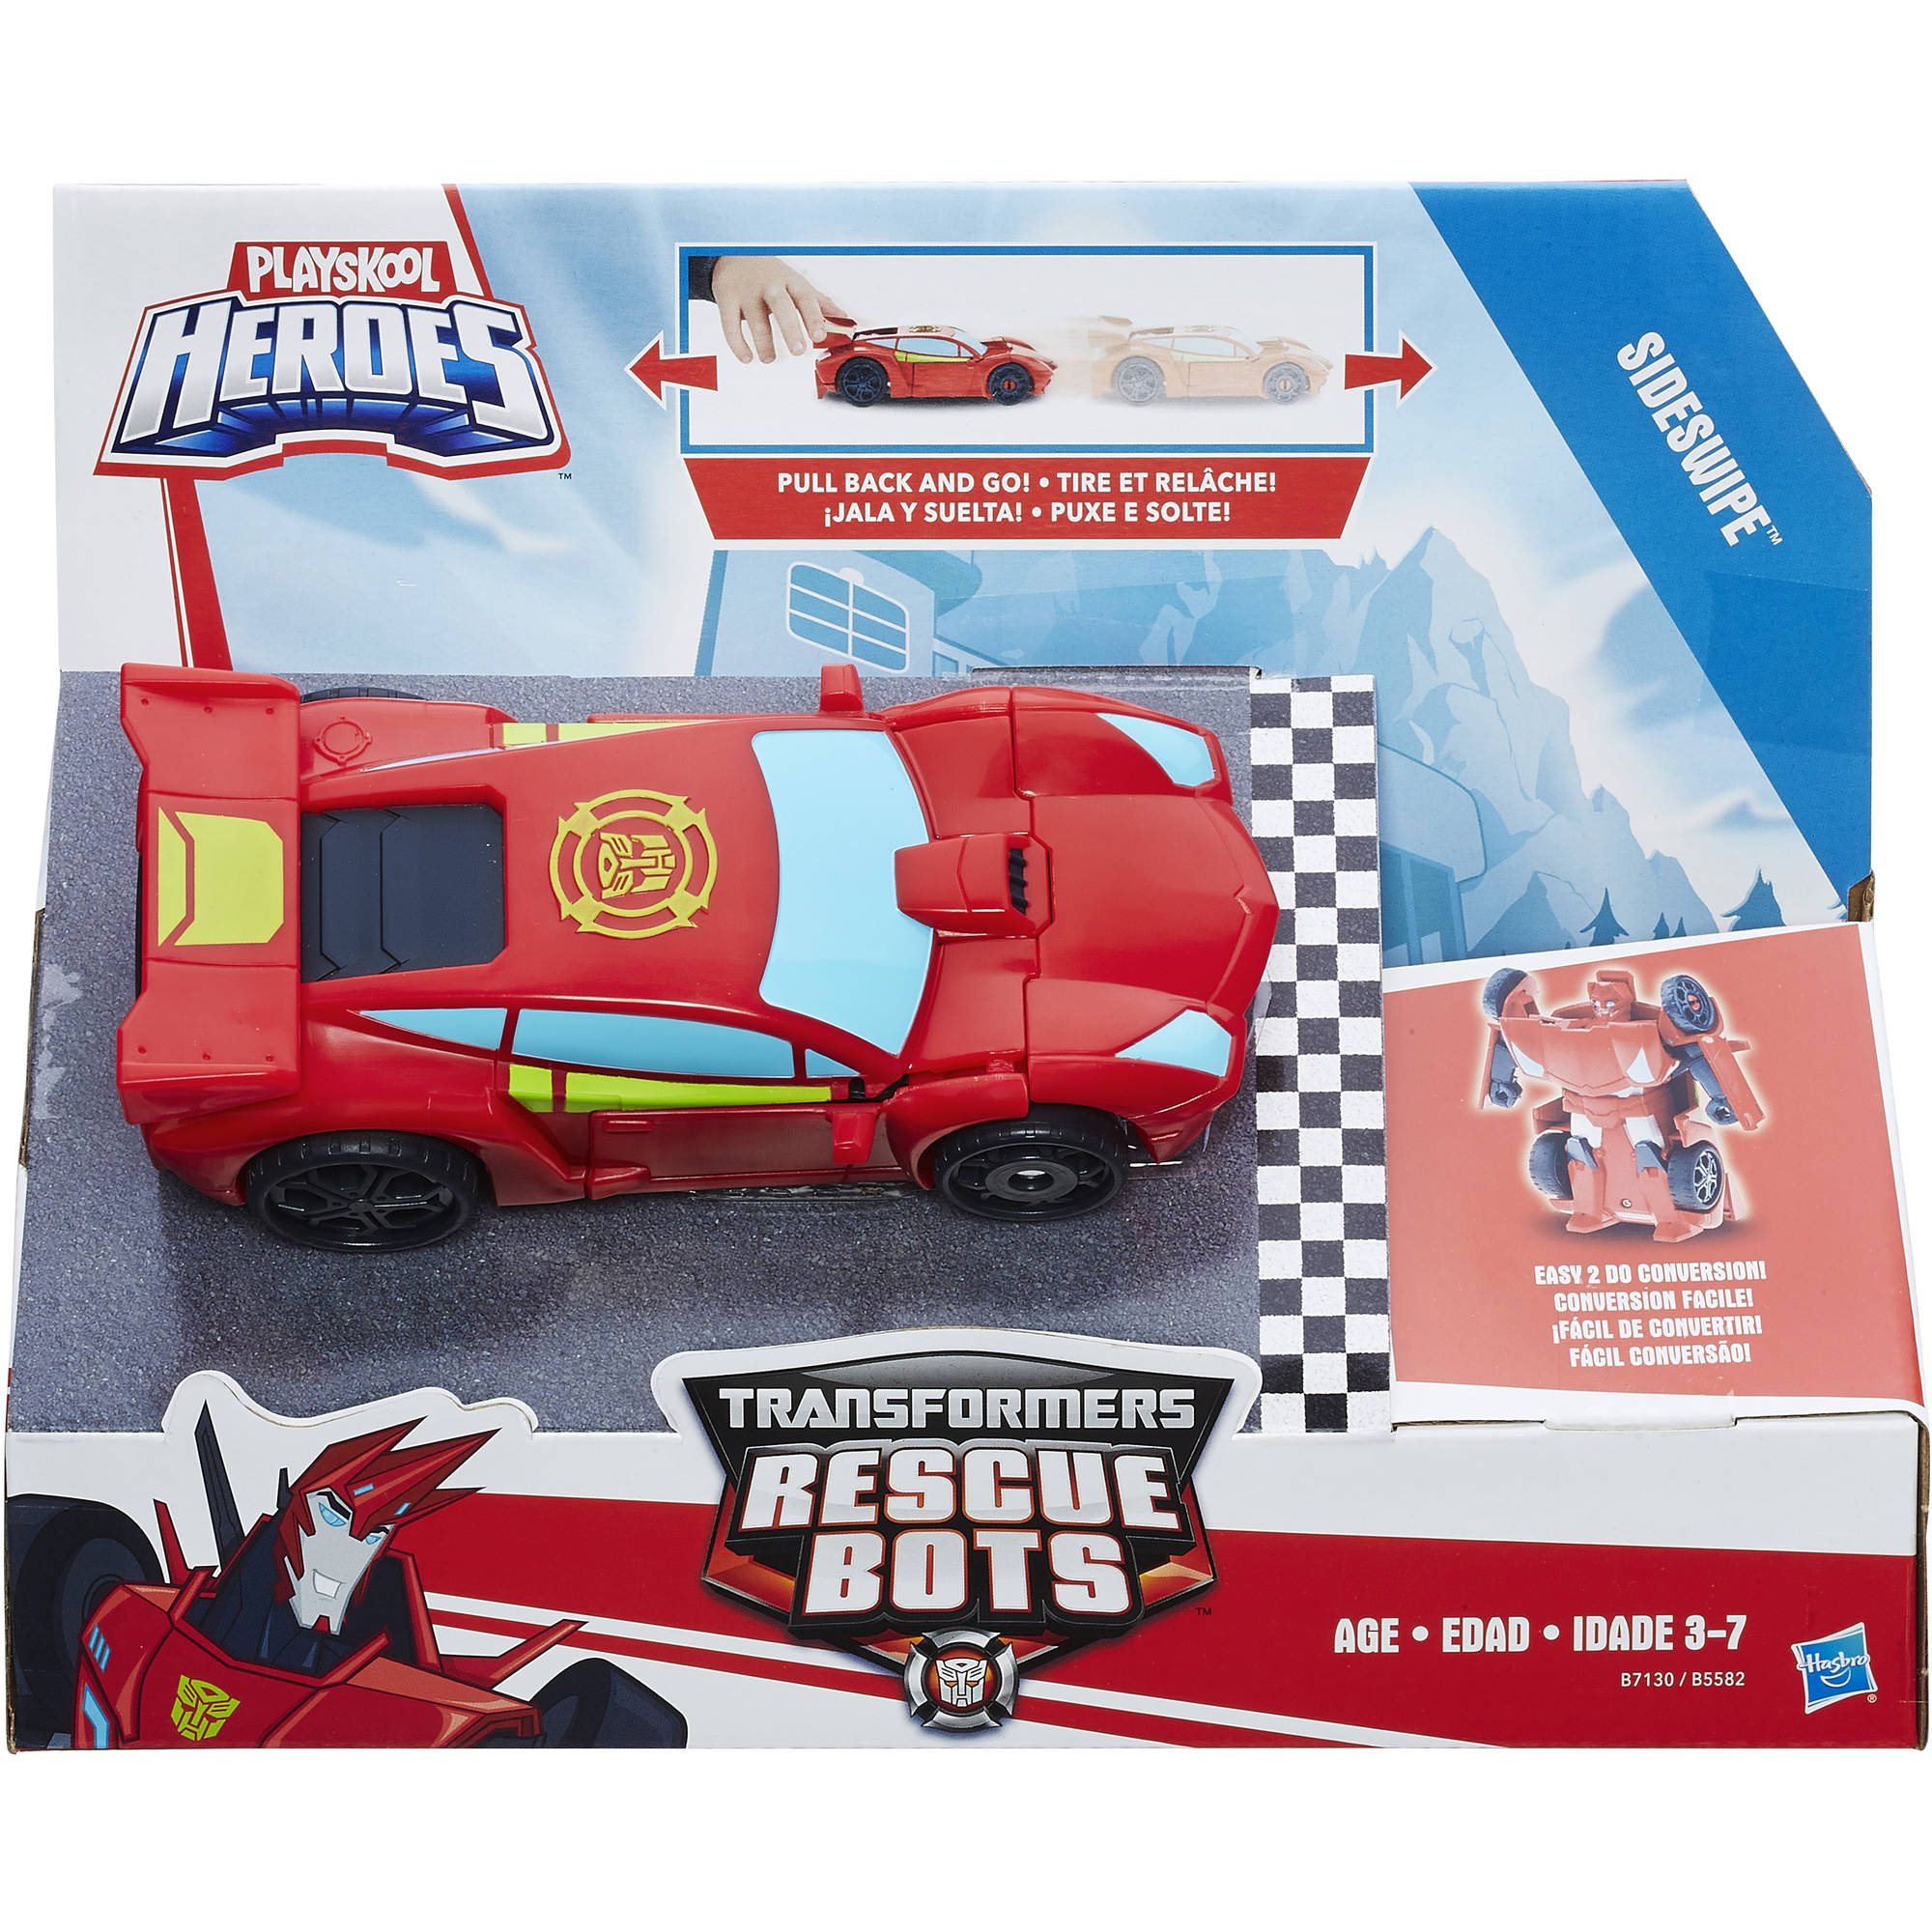 Набор Hasbro Playskool Heroes - Трансформеры Спасатели: гоночные машины + спасатели  